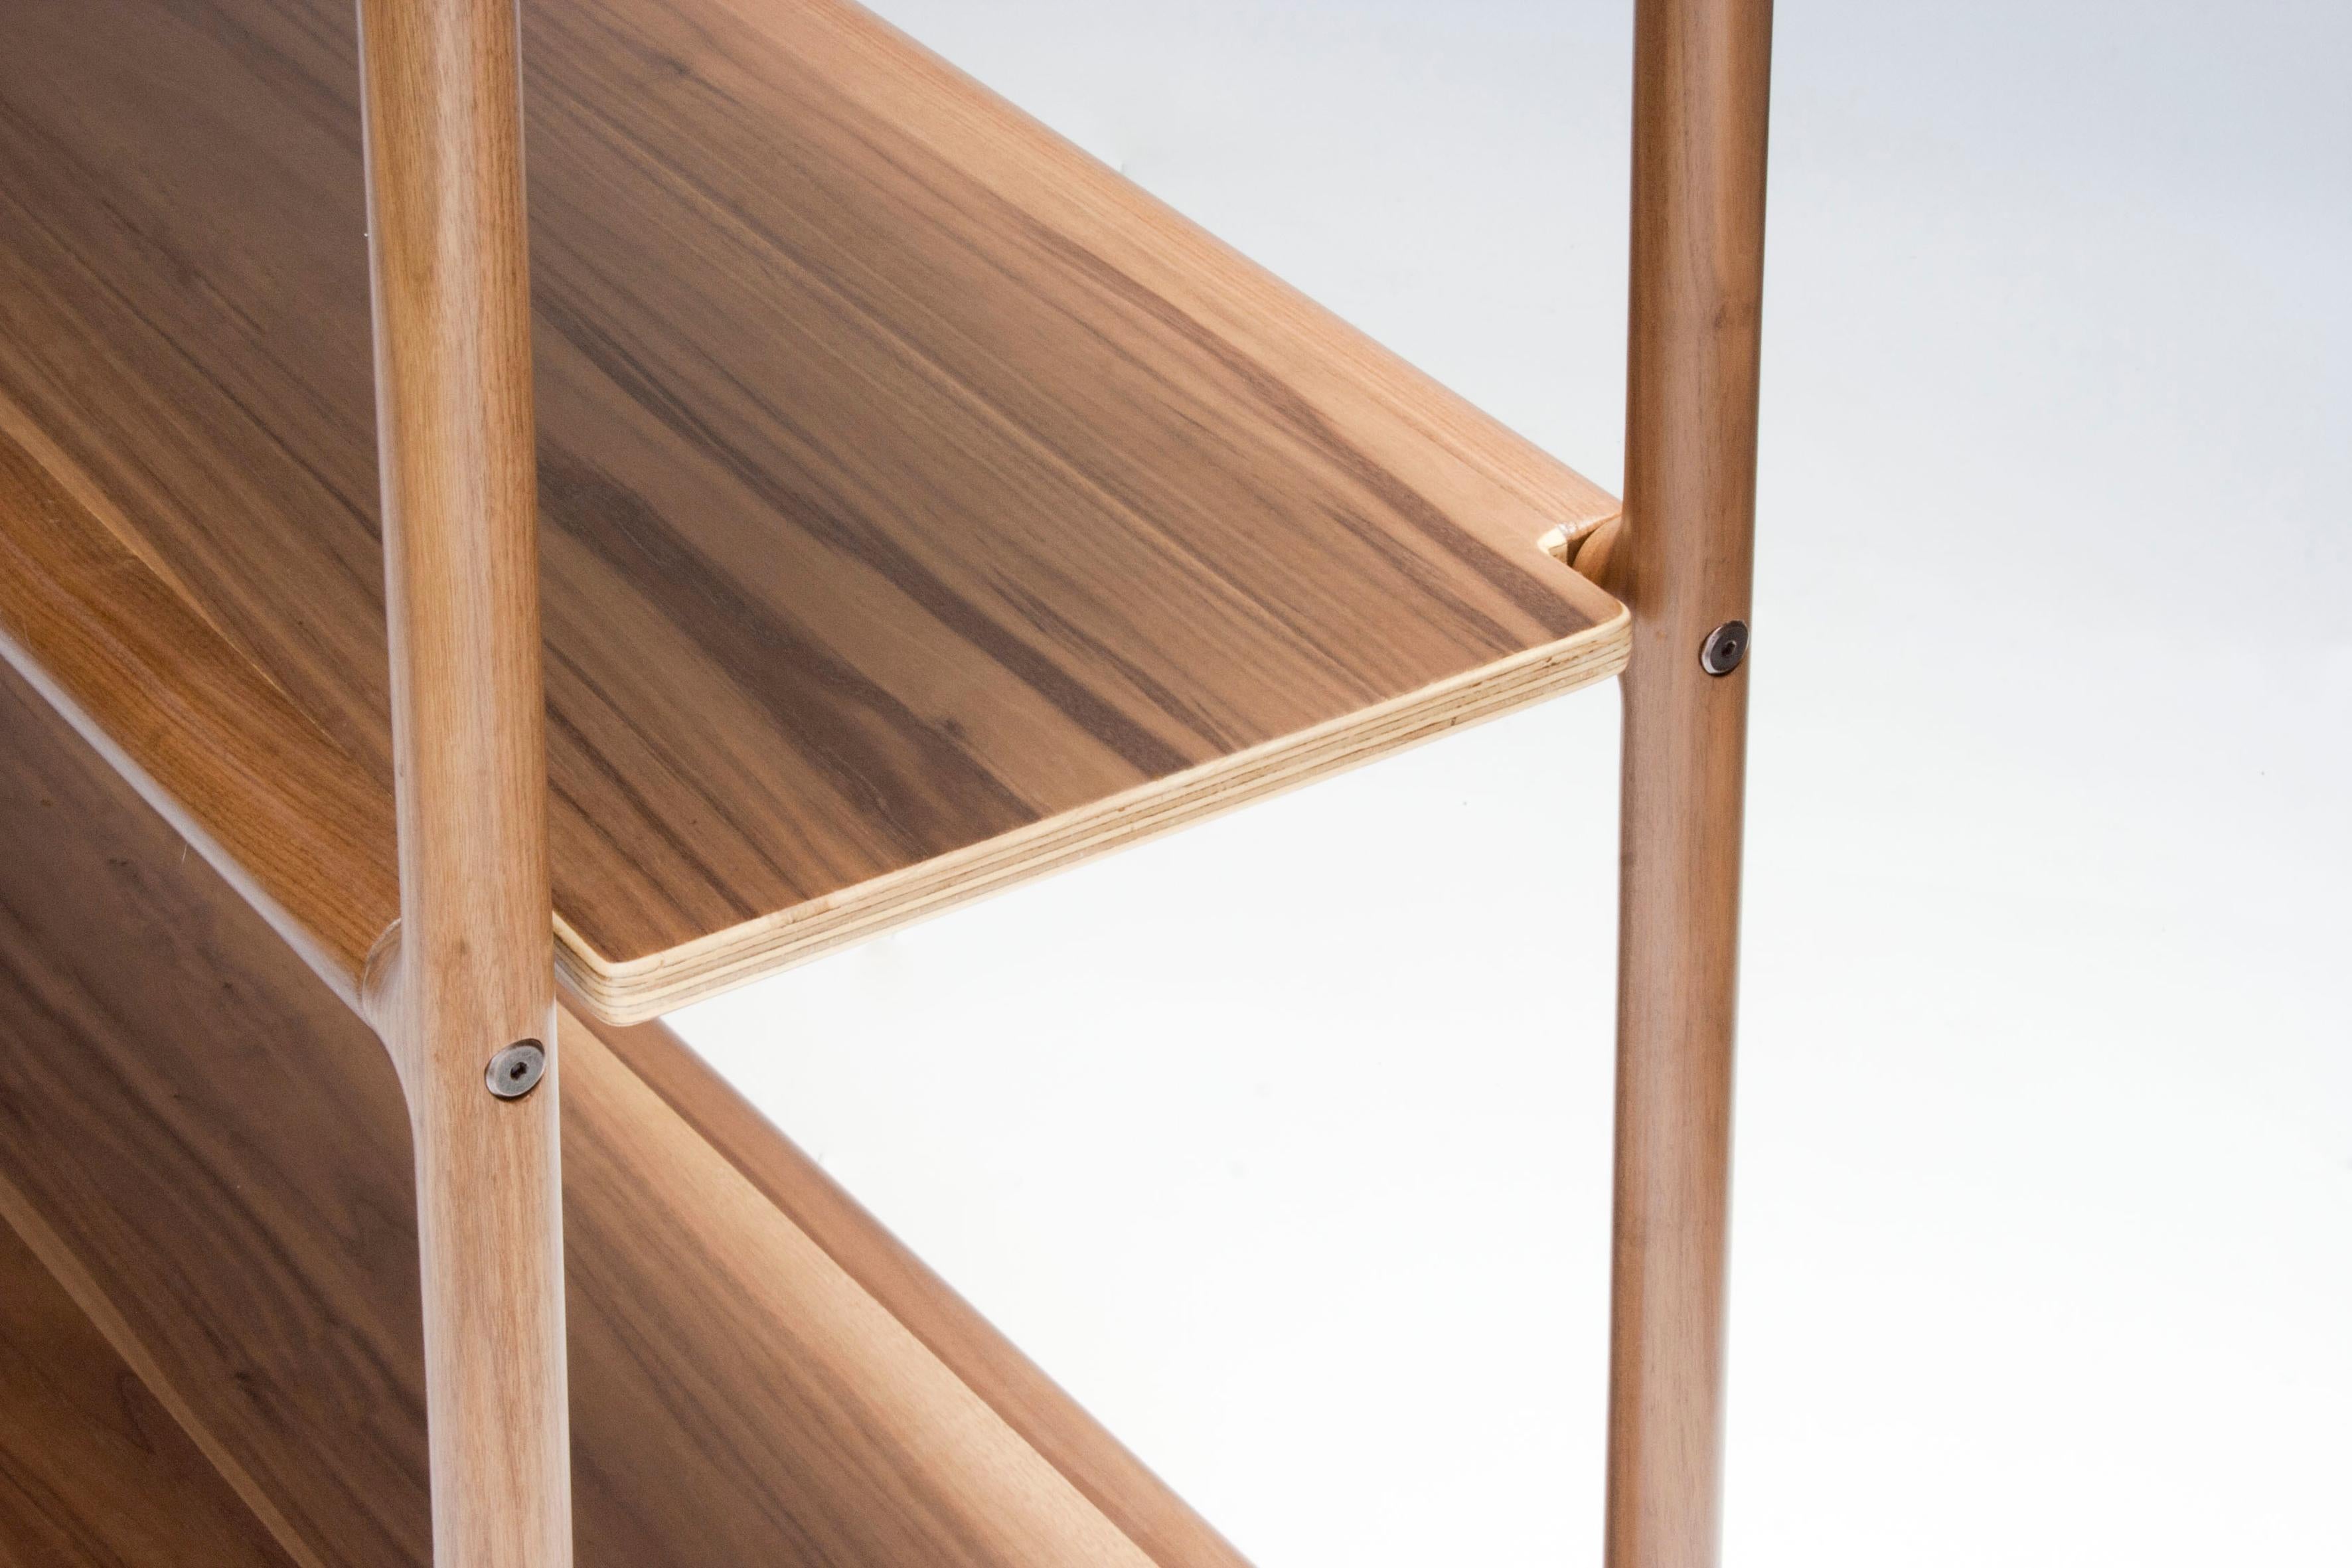 Mictlán ist aus Nussbaumholz gefertigt und verbindet moderne CNS-Techniken mit traditioneller Handwerkskunst zu einem Produkt von ästhetischer Schlichtheit und großer Detailtreue.